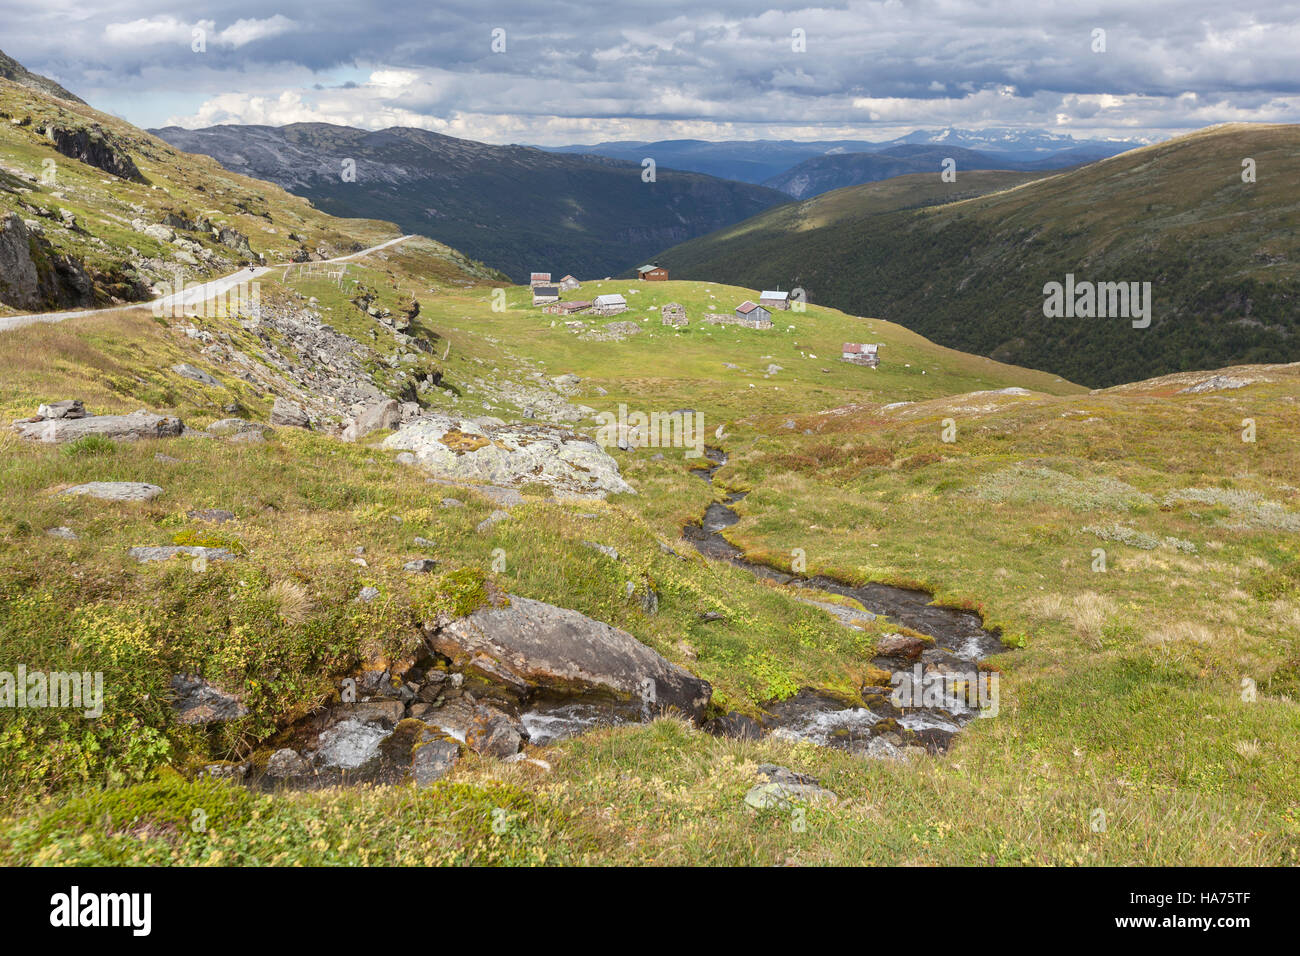 Maisons et hytter le long Aurlandsfjellet Route touristique nationale, la Norvège Banque D'Images